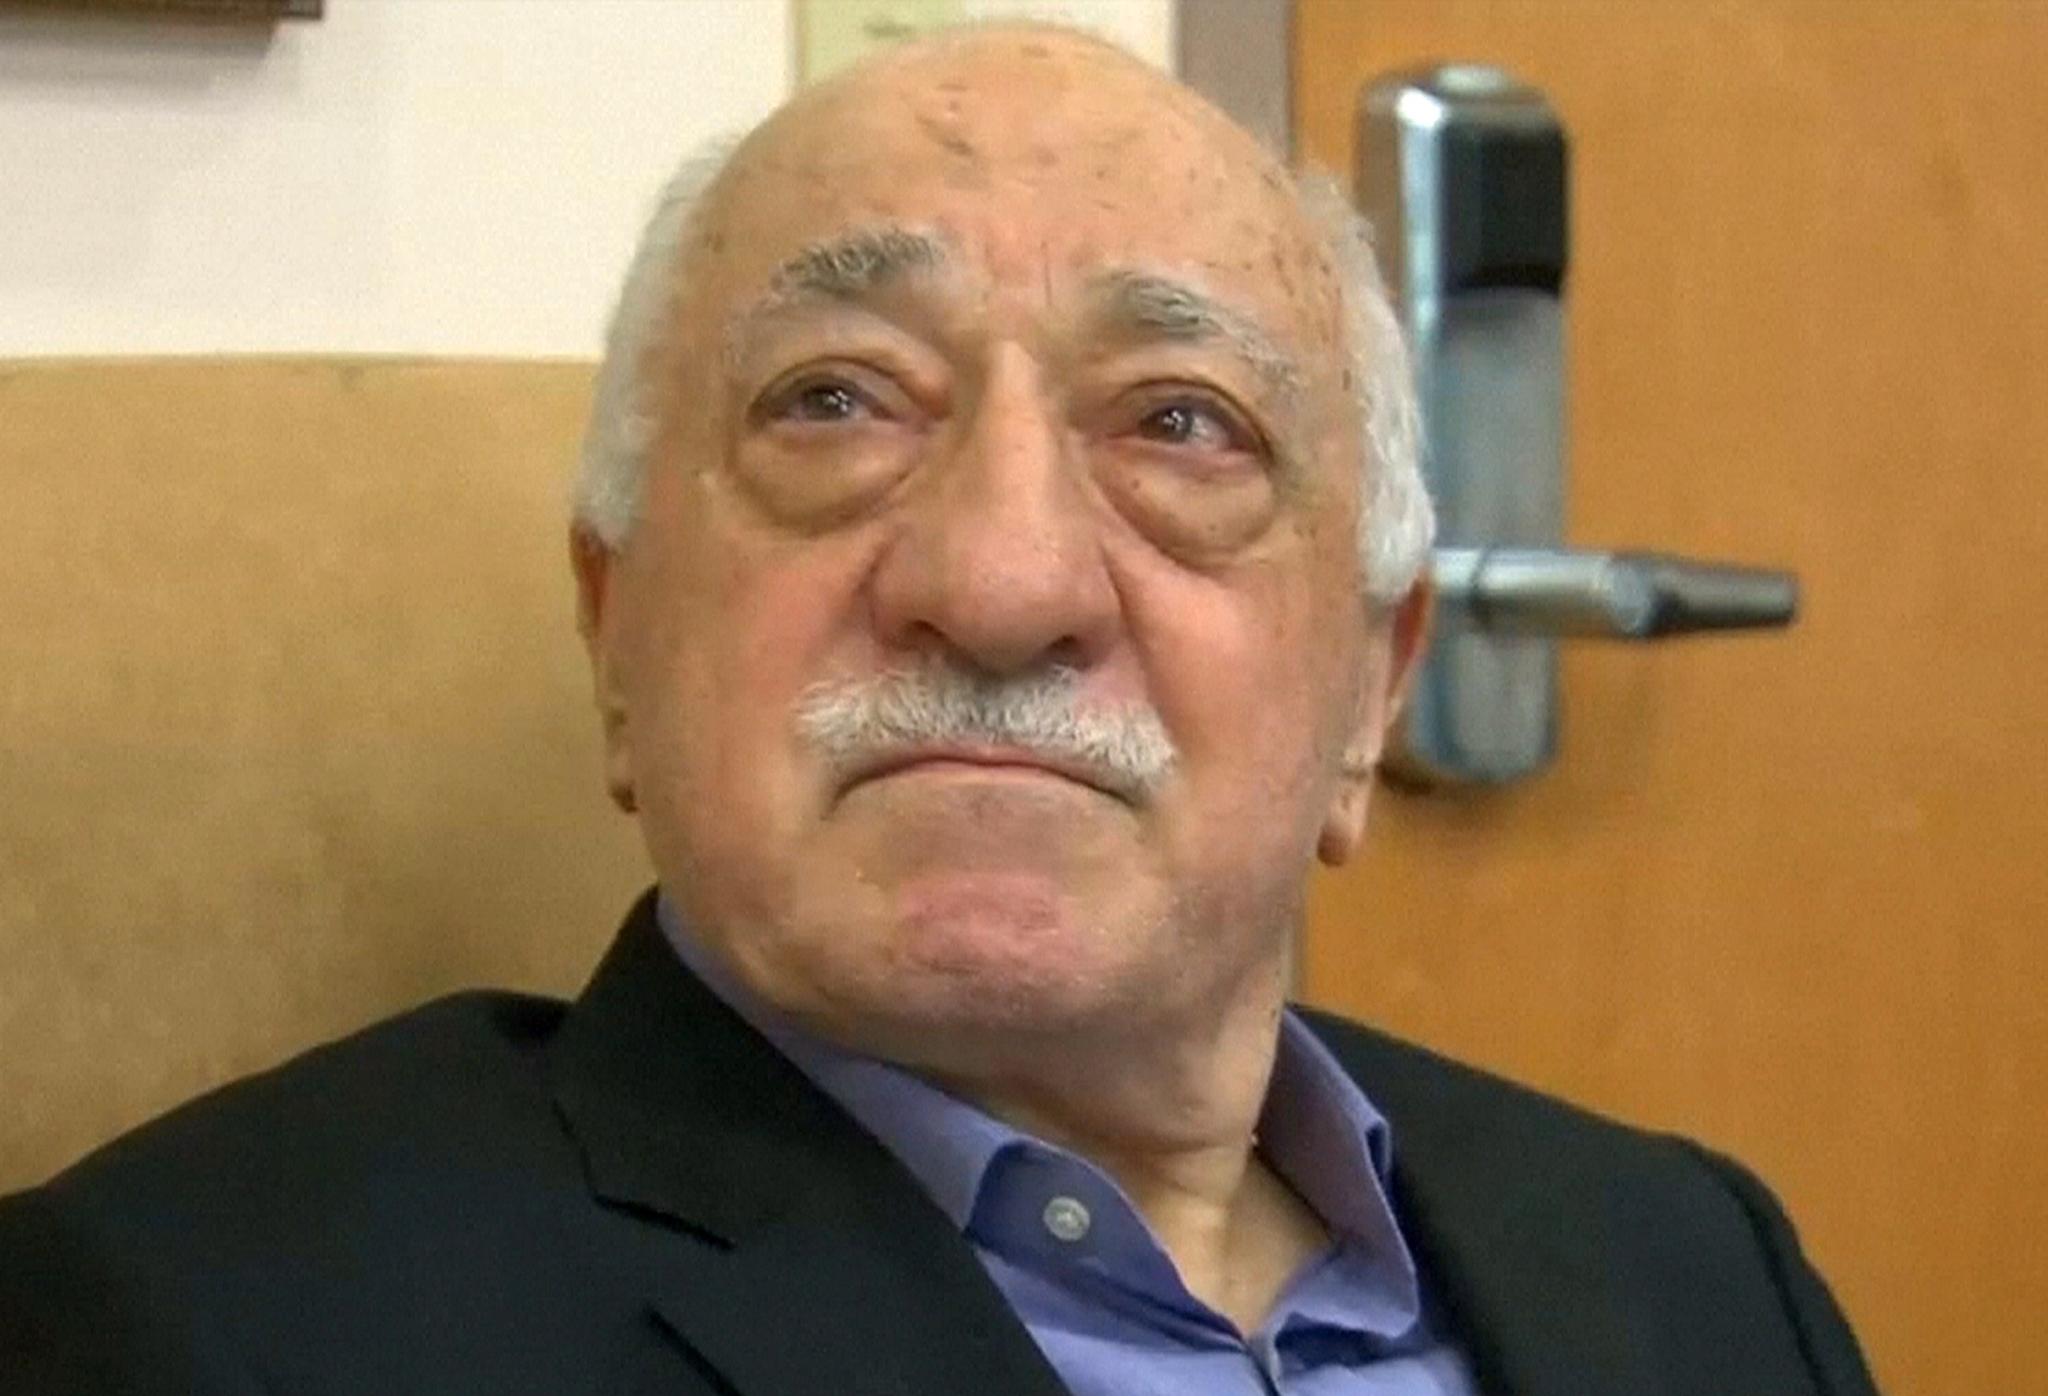 President Erdogan mener denne mannen, Fetullah Gülen, som lever i selvpålagt eksil i USA, sto bak kuppet og vil ha ham utlevert. Gülen nekter at han har noe med kuppet å gjøre.